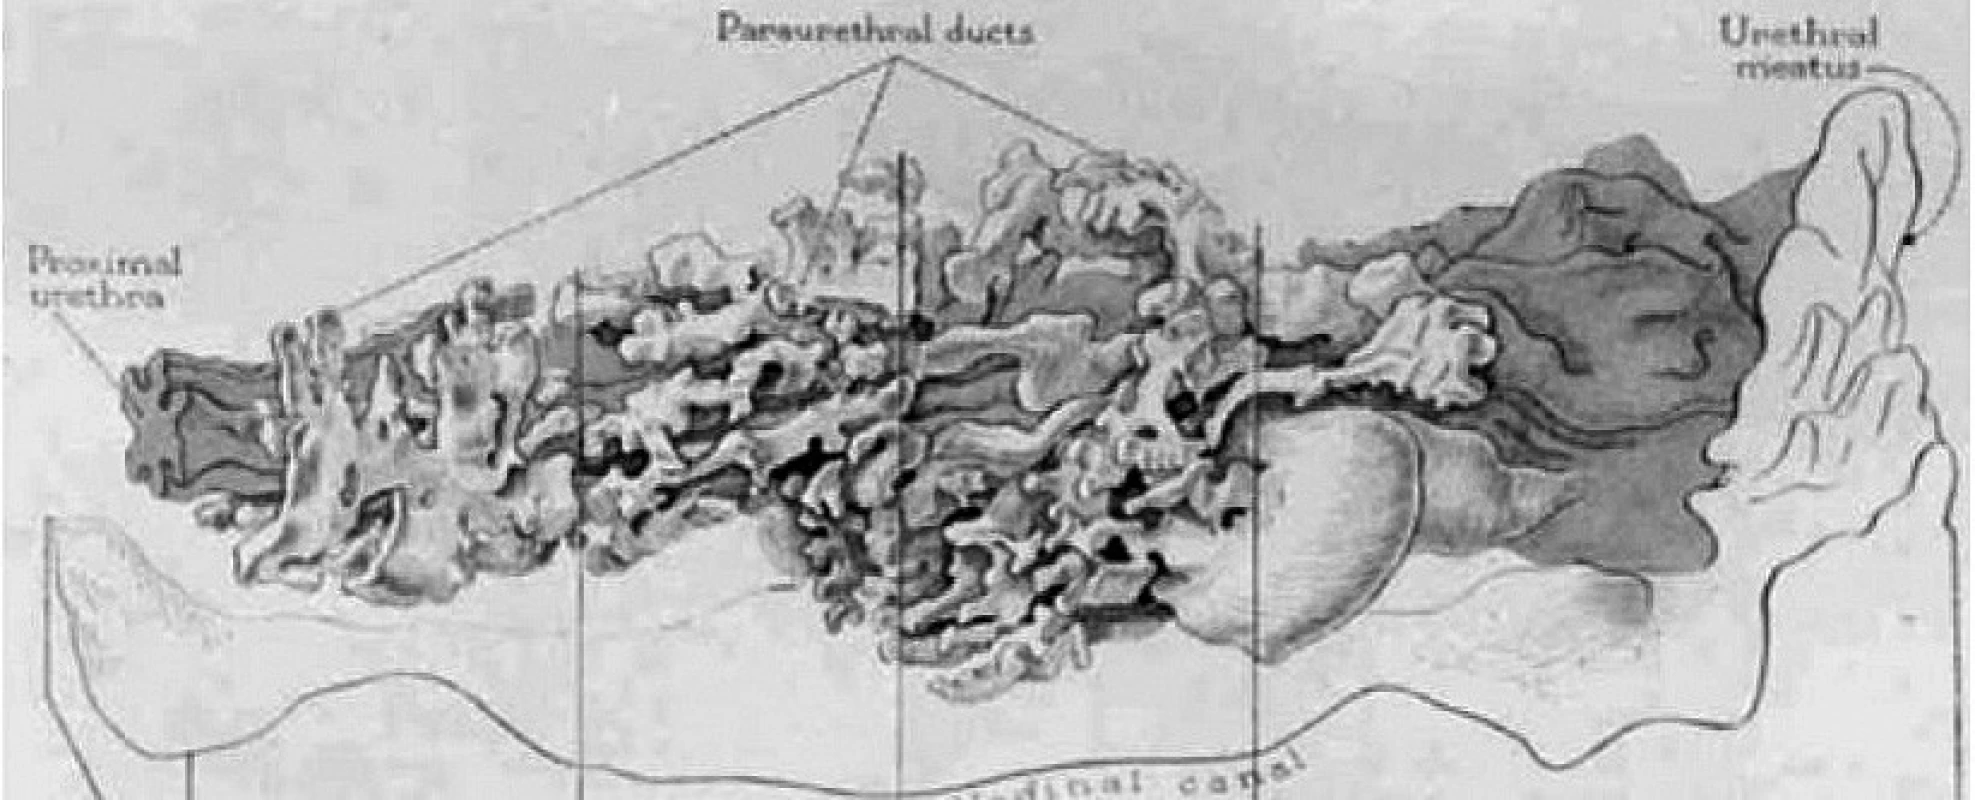 Huffmanův voskový model ženské prostaty, longitudinální pohled (zdroj: Huffman, J. The detailed anatomy of the paraurethral ducts in the adult human female. Am J Obstet Gynecol, 1948, 55, p. 86–101)